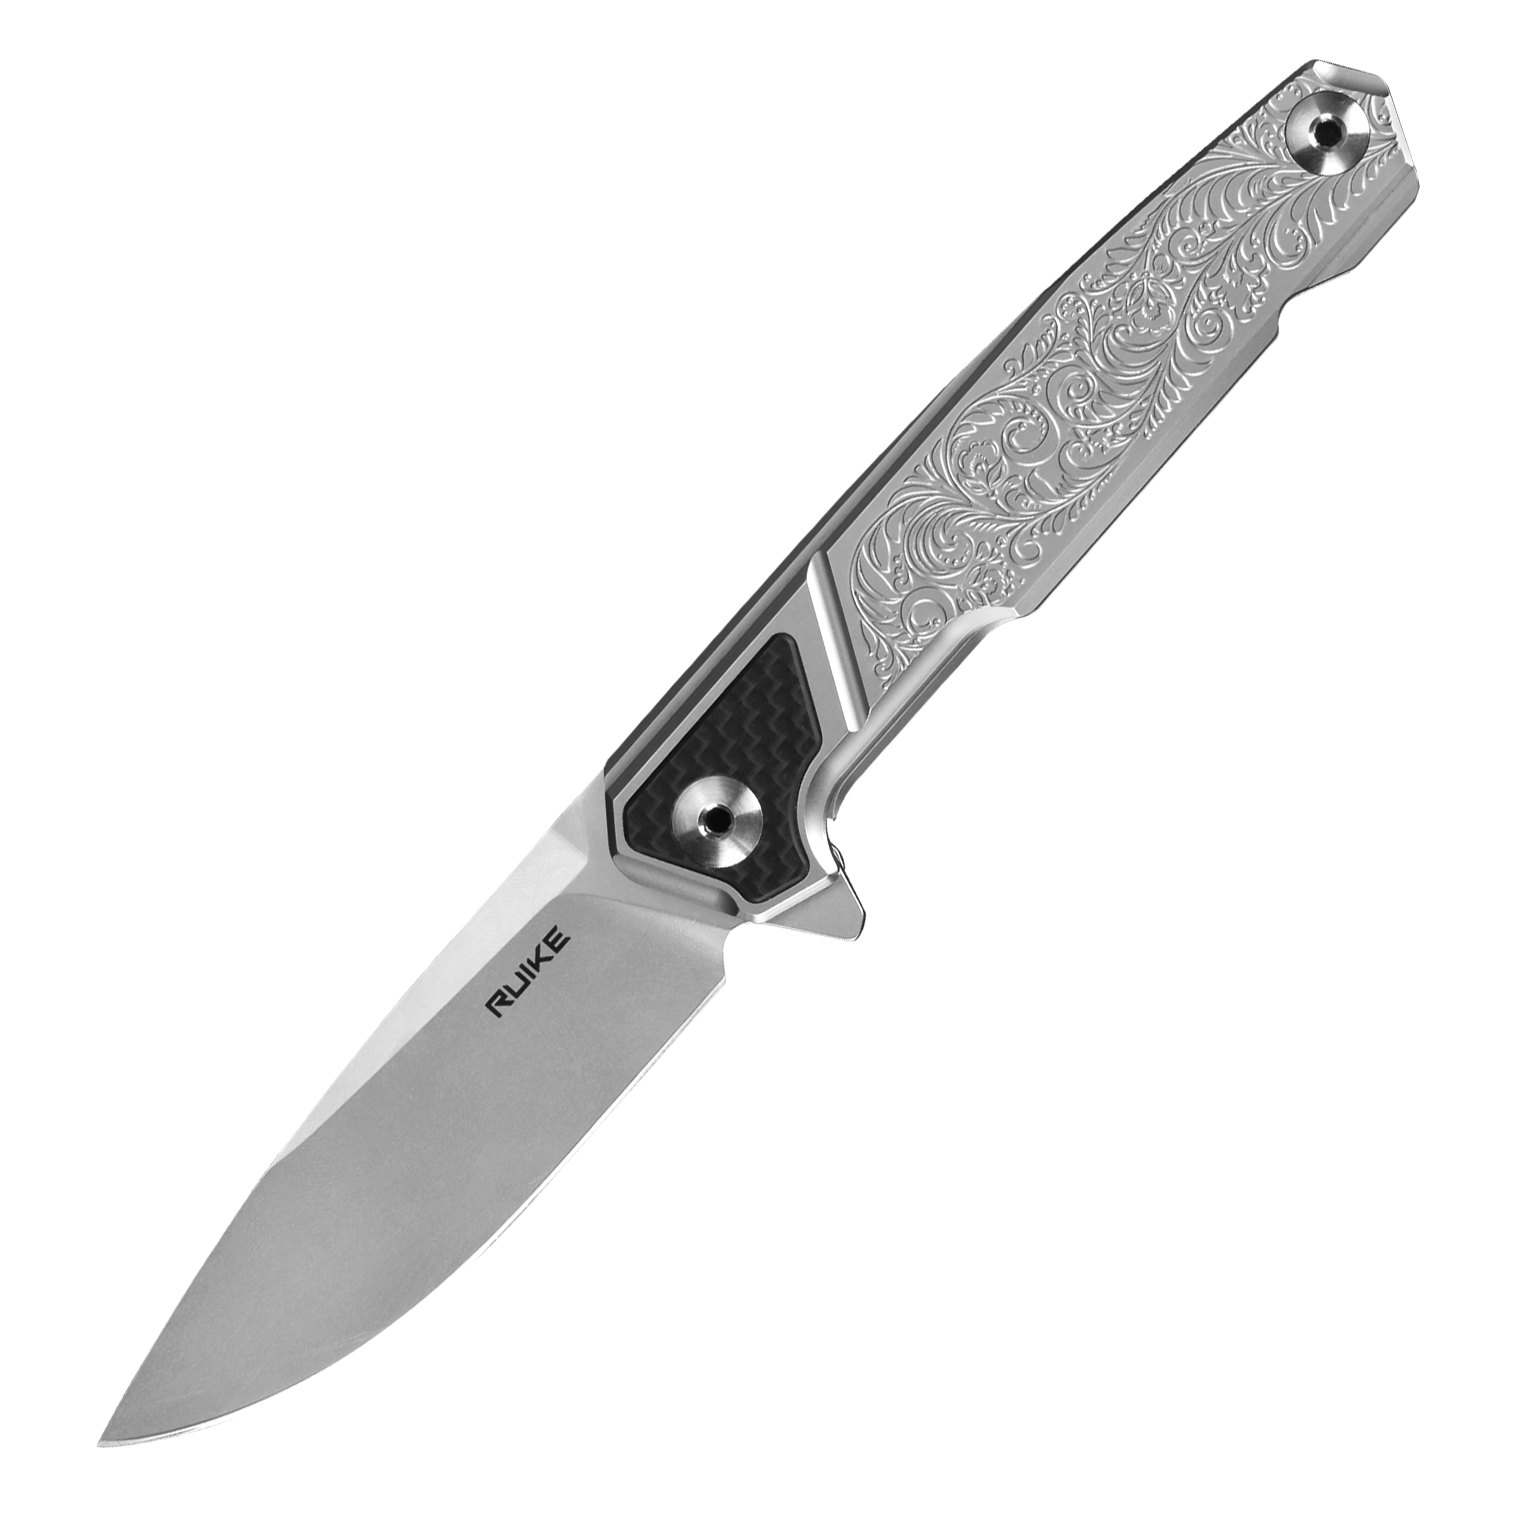  нож Ruike P875-SZ, сталь 14C28N, P875-SZ по цене 8210.0 руб .